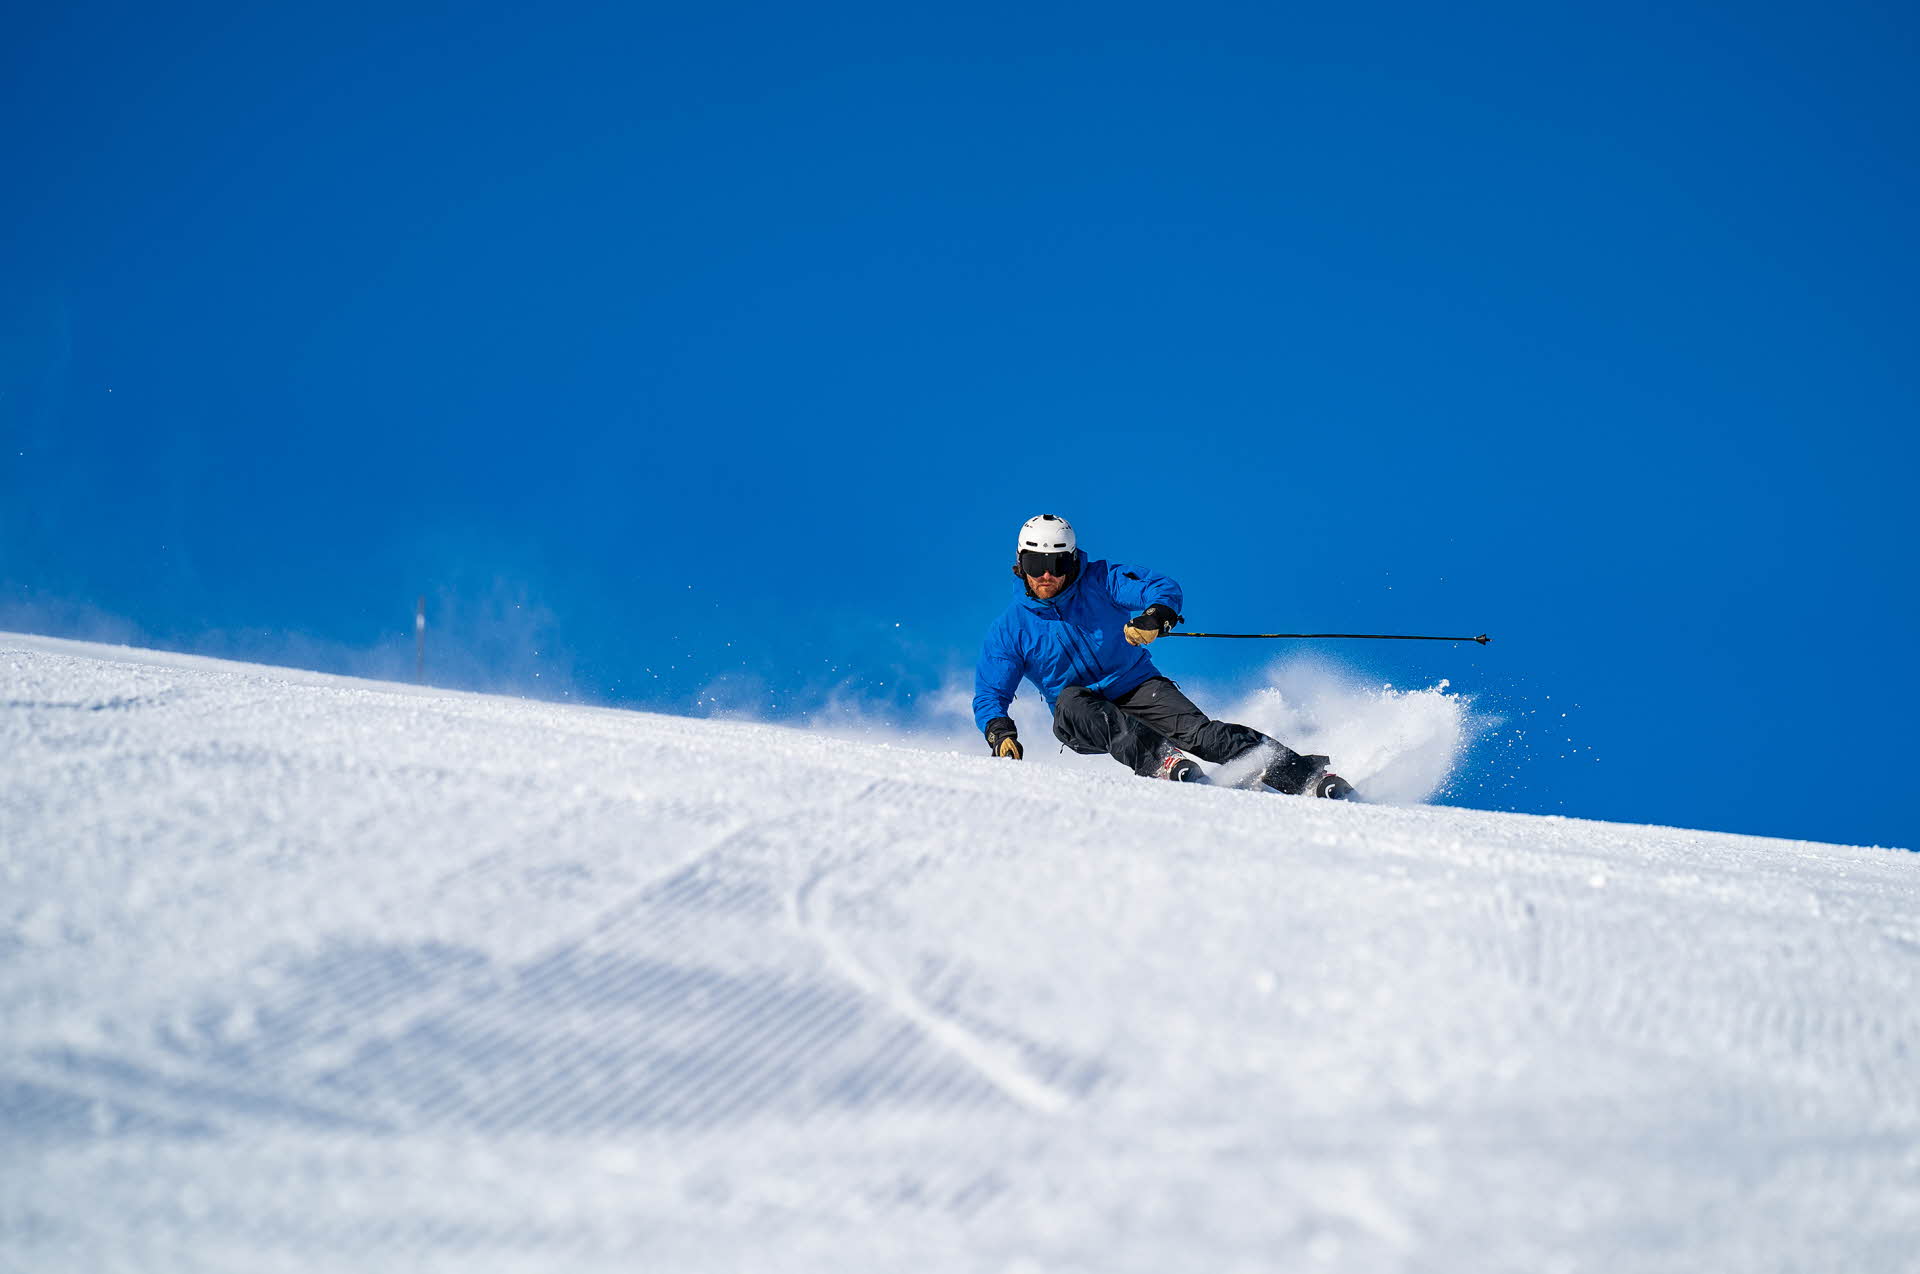 一个穿蓝色夹克滑雪的人在米克达林完美的滑雪坡道上铲起雪花。后面的天很蓝。 